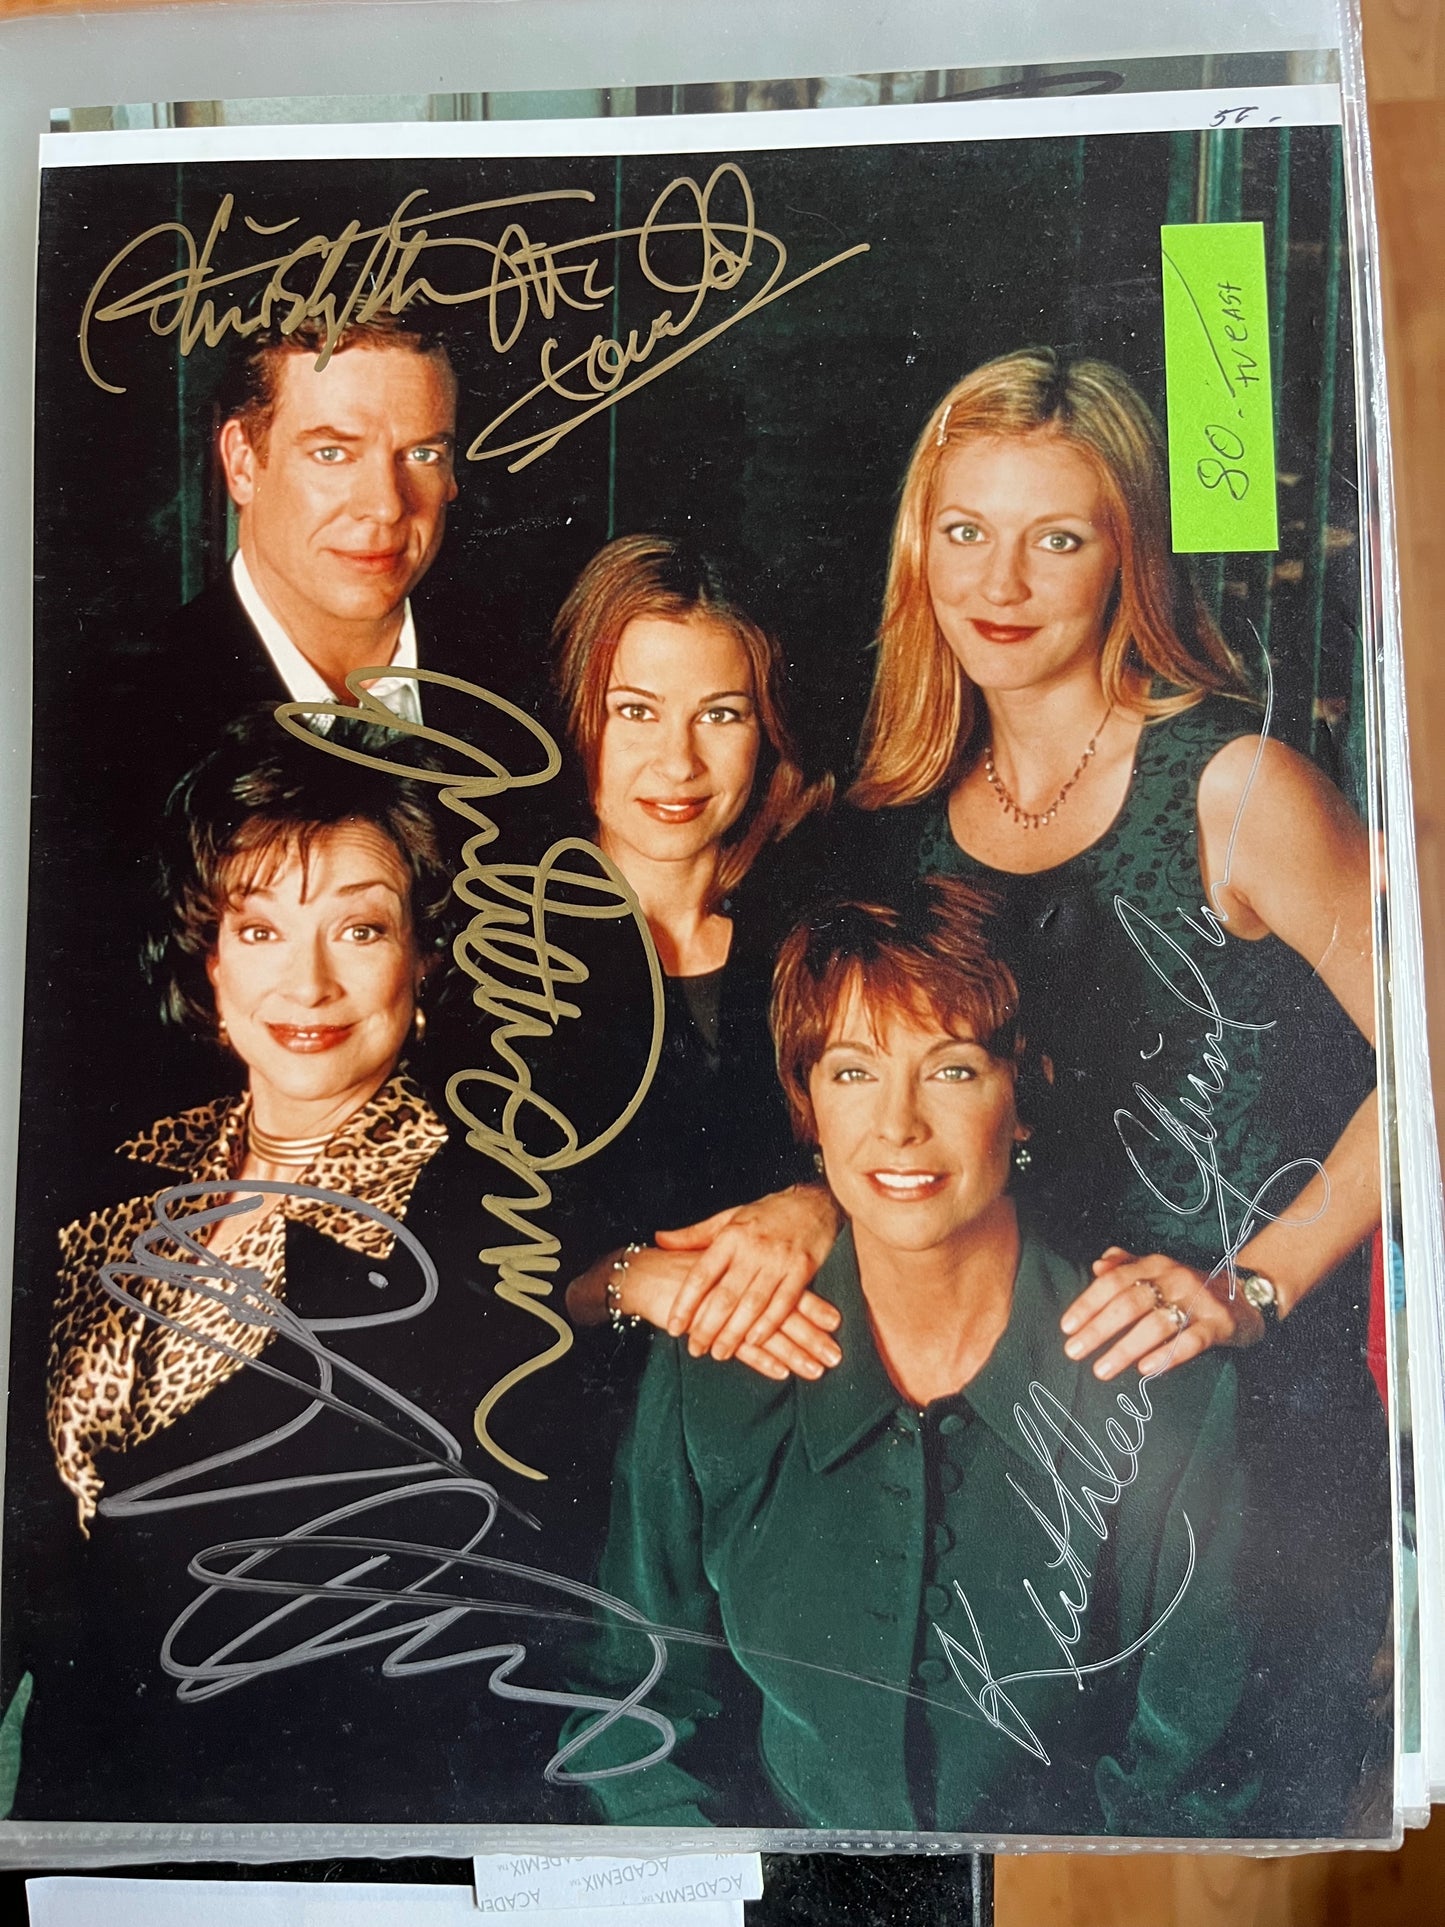 FAMILY LAW, TV cast photo, autographs